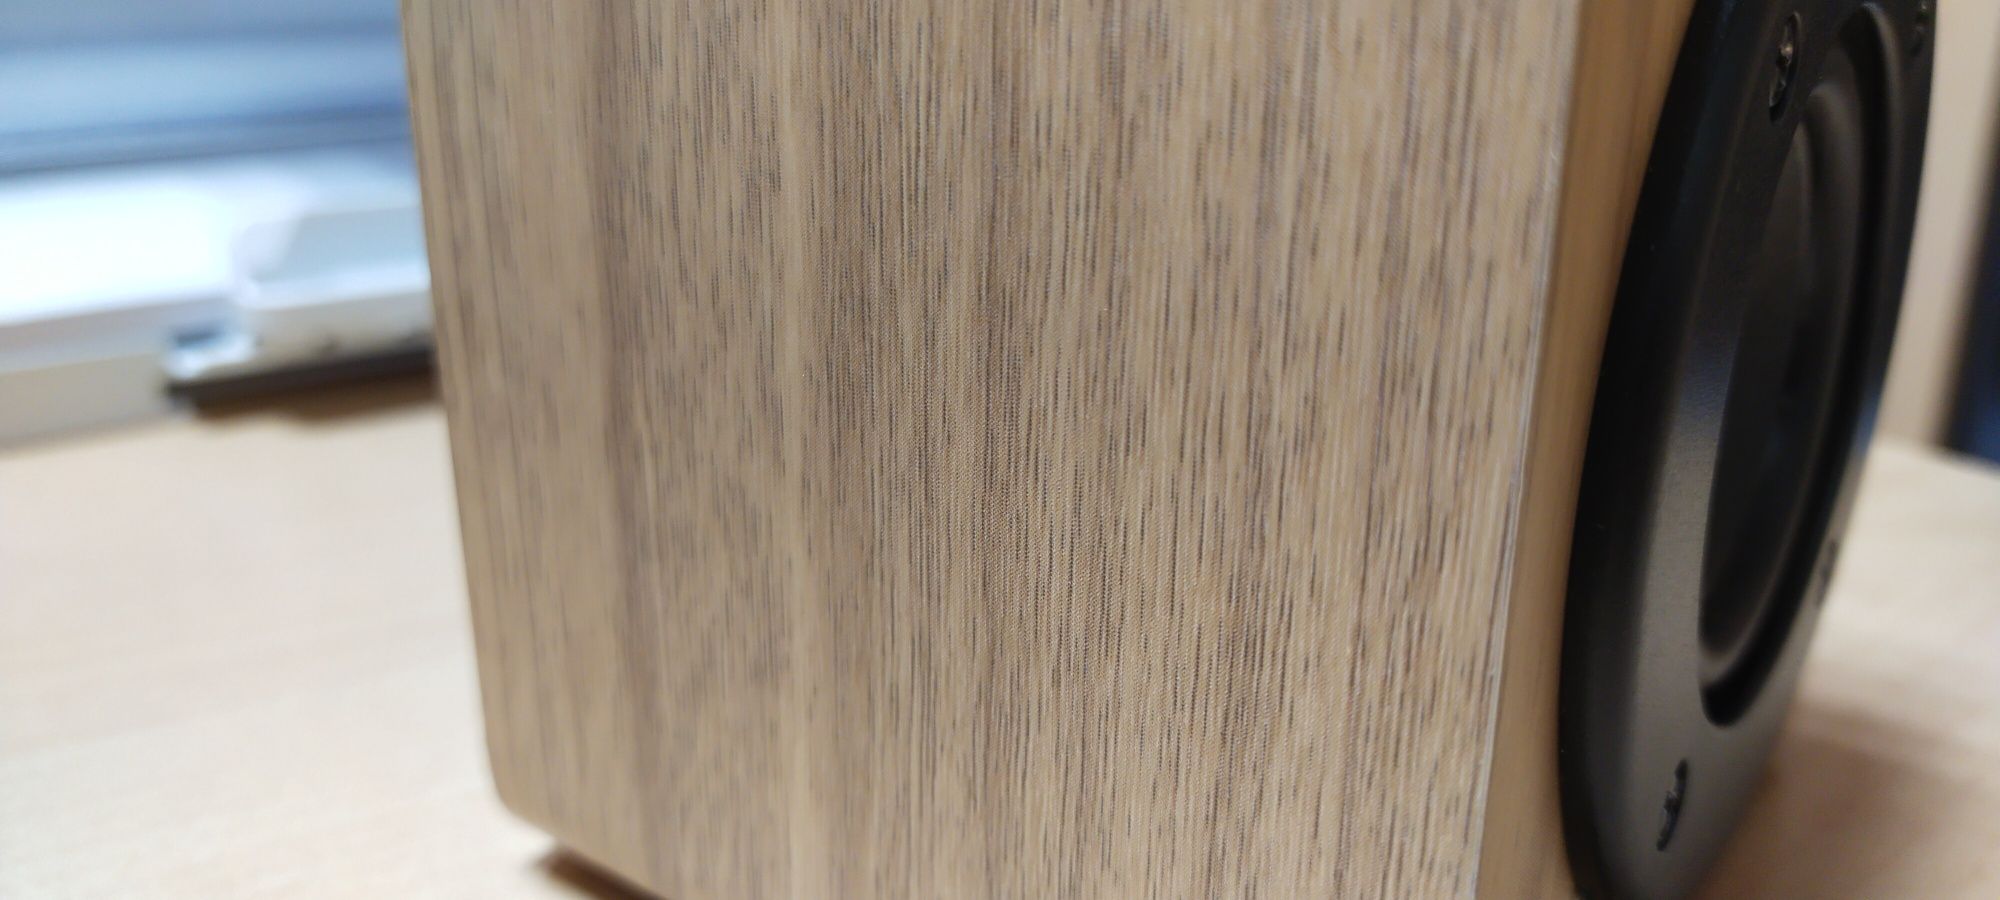 Głośnik bezprzewodowy, bluetooth nowy koloru drewna